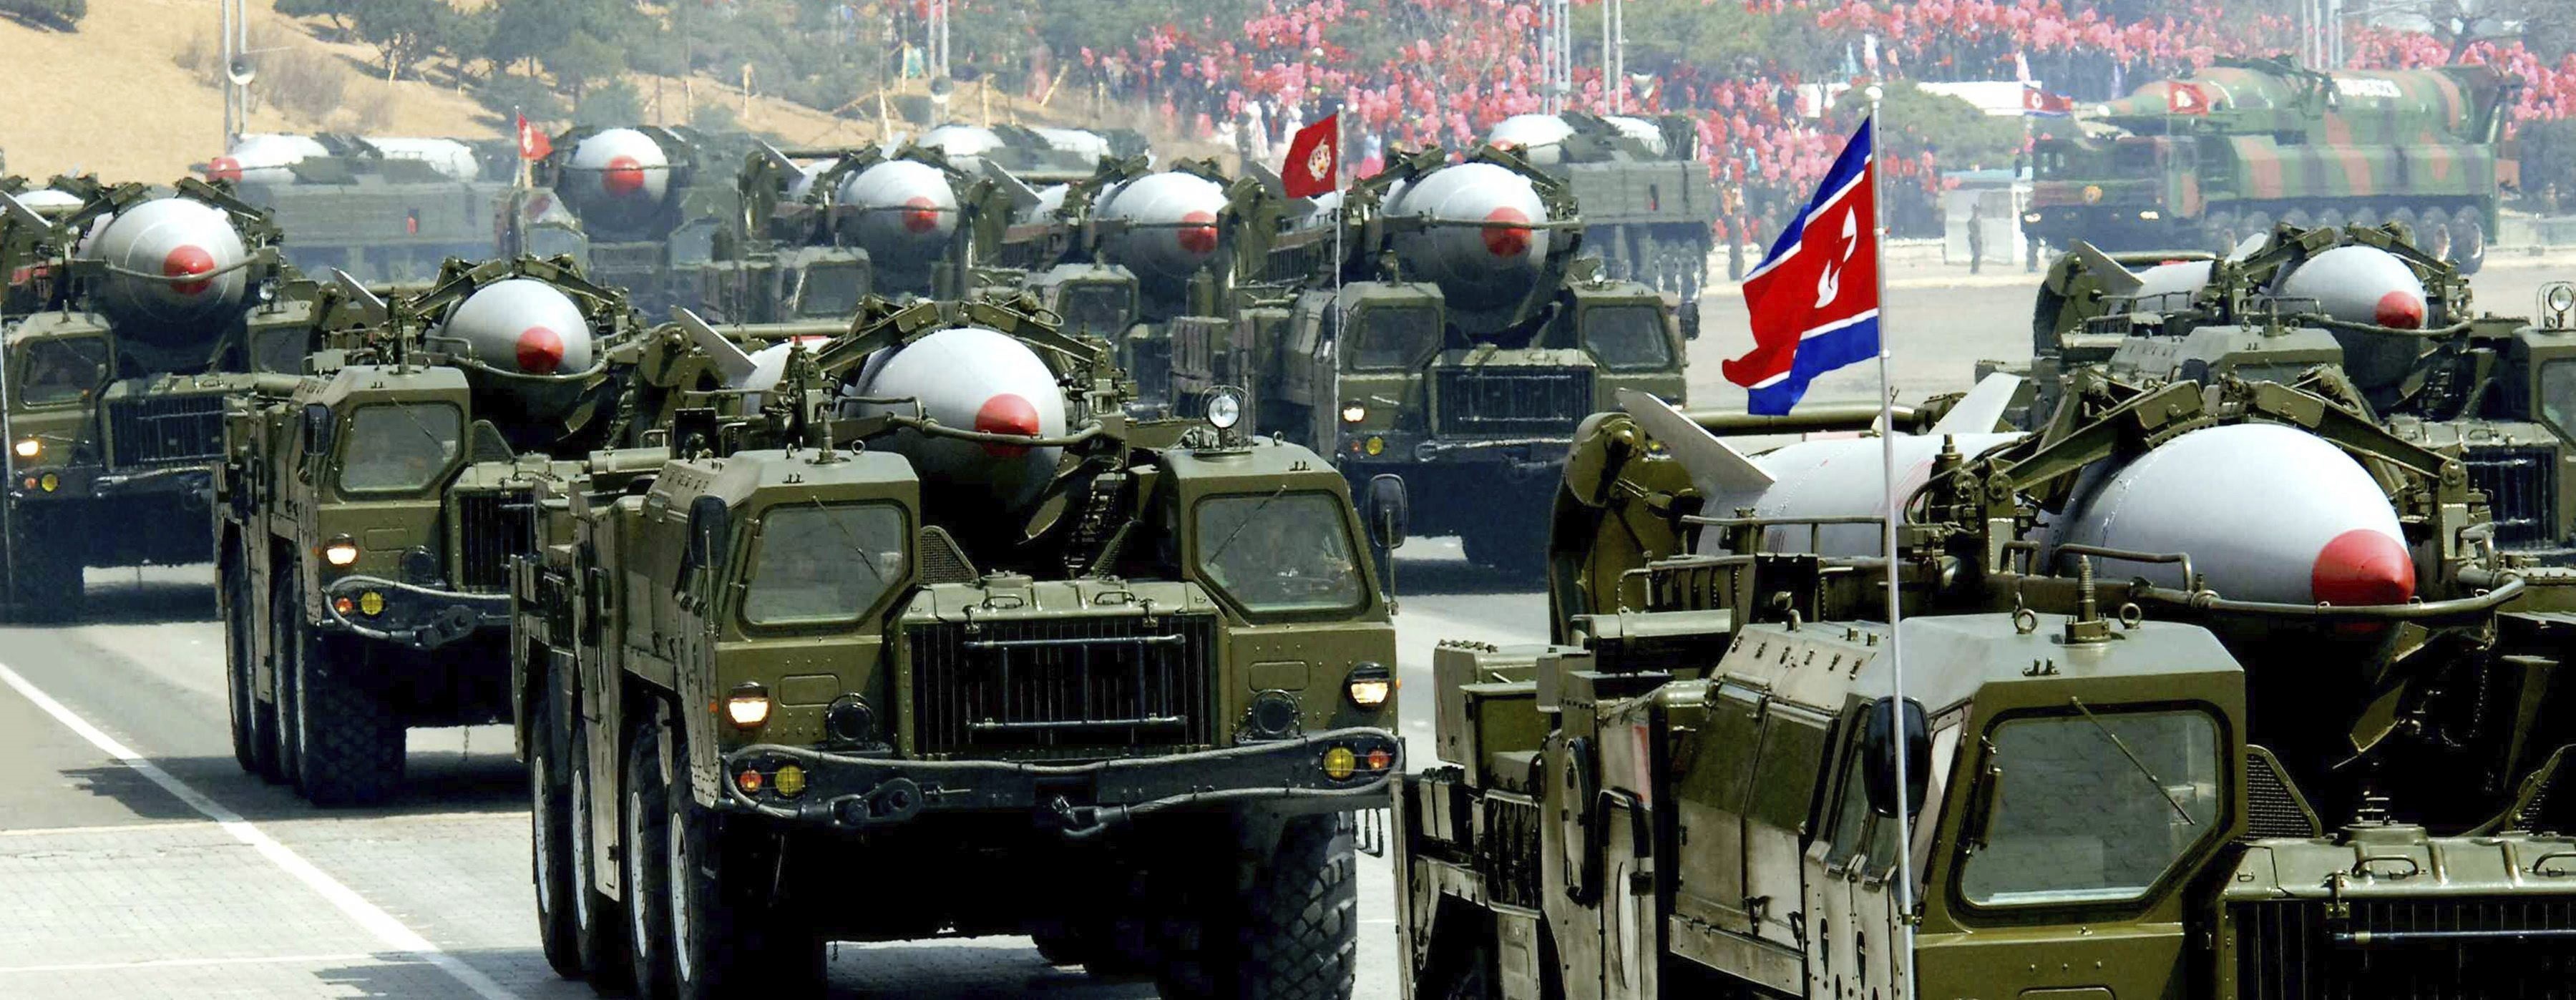 Fotografía que muestra varios vehículos que transportan misiles Scud norcoreanos durante un desfile militar celebrado en Pyongyang (EFE/Stringer /Archivo)
